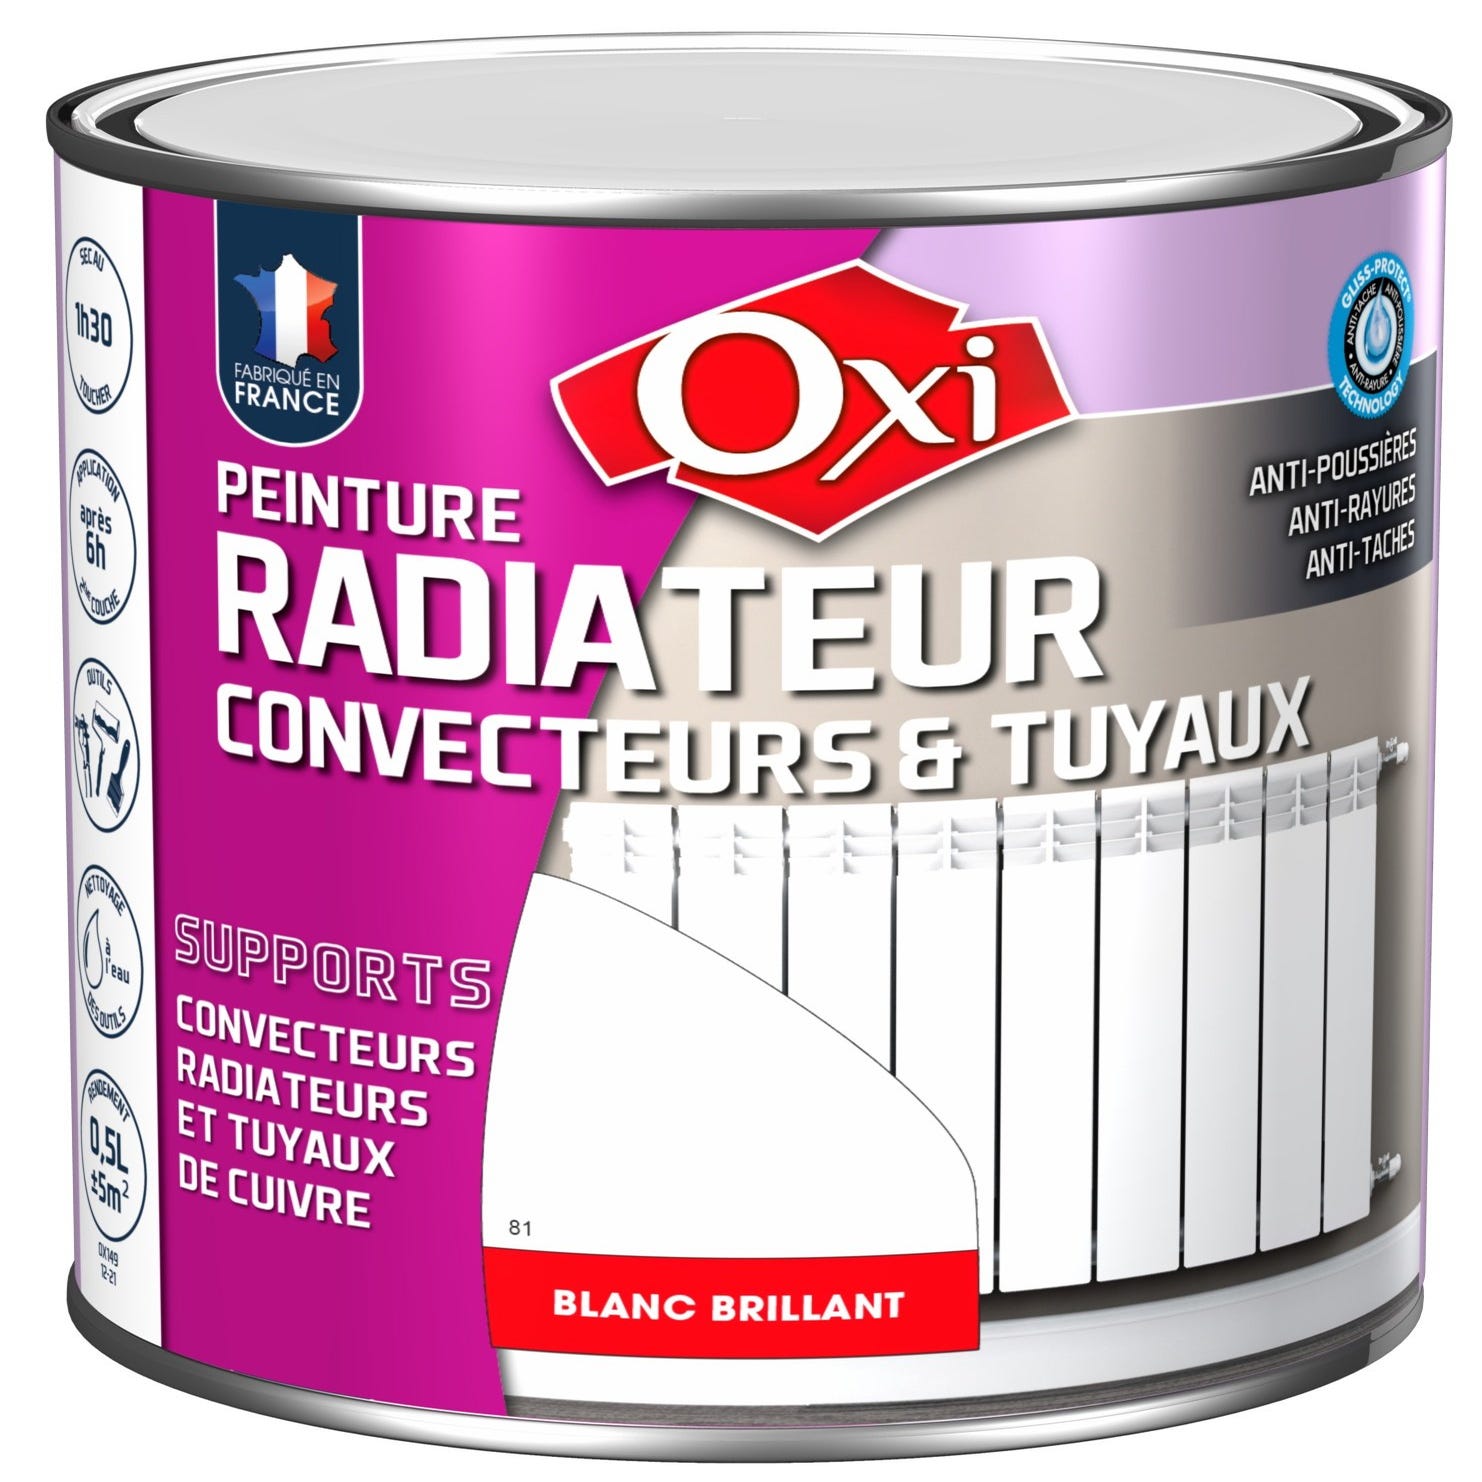 Oxi : Peinture radiateur convecteurs et tuyaux